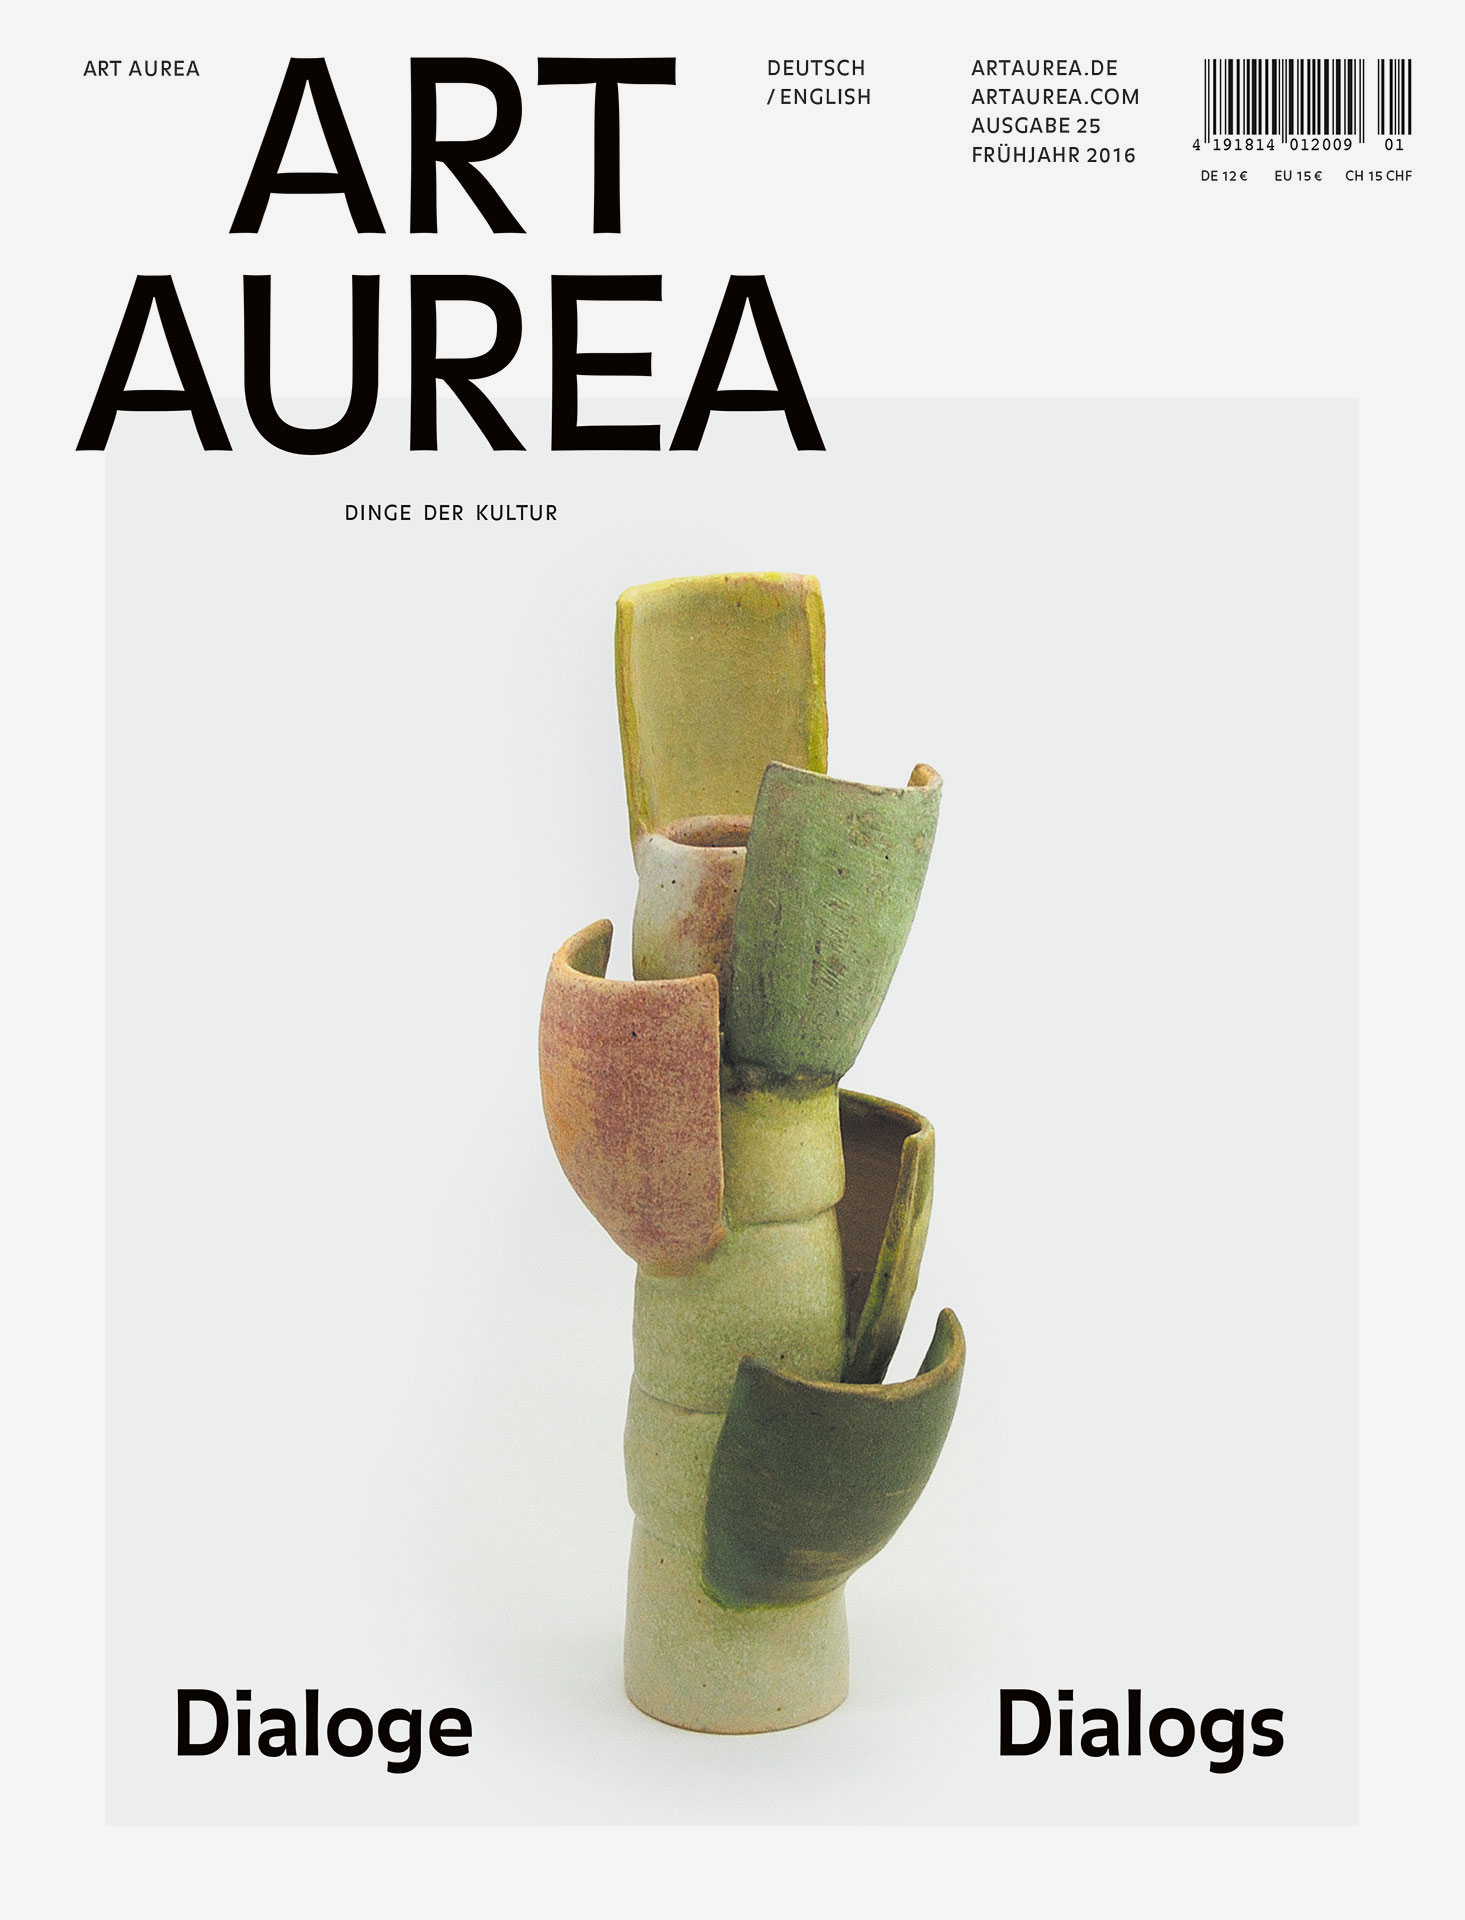 Art Aurea's printed 1-2016 issue